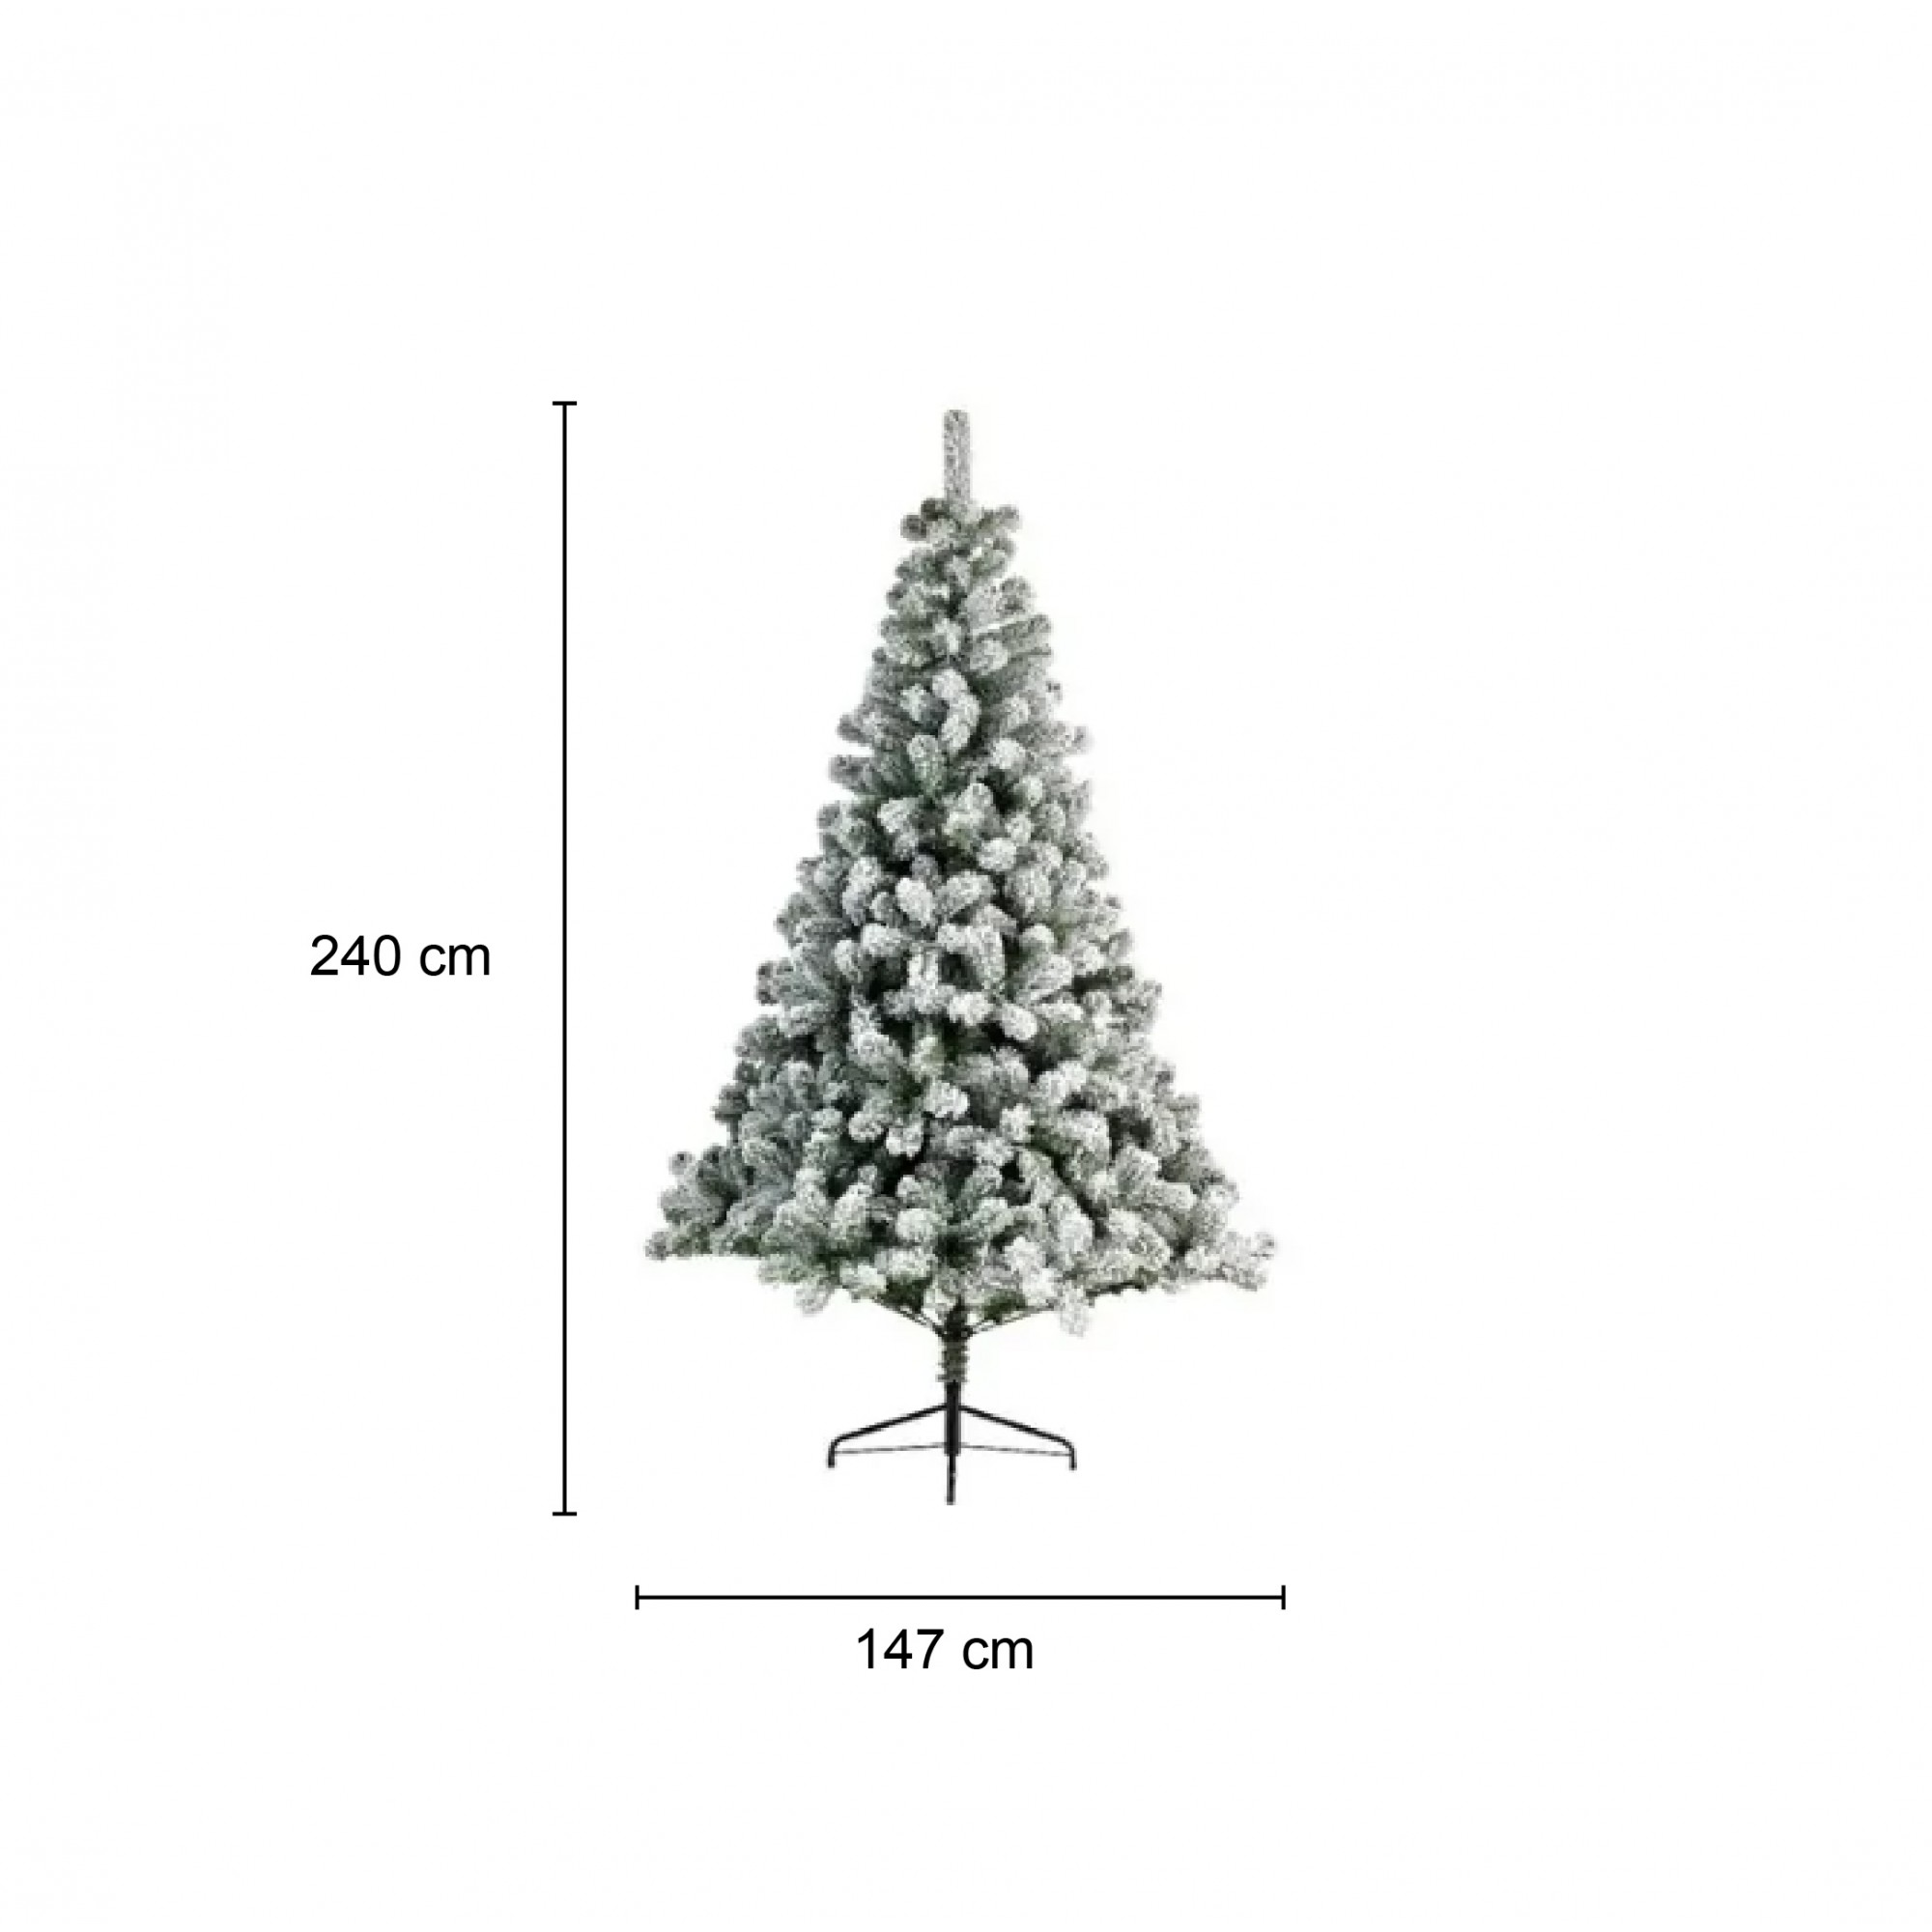 Everlands Albero di Natale Imperial Innevato 240 cm, Diametro 147 cm,  Apertura a Ombrello, 12 Anni Di Garanzia